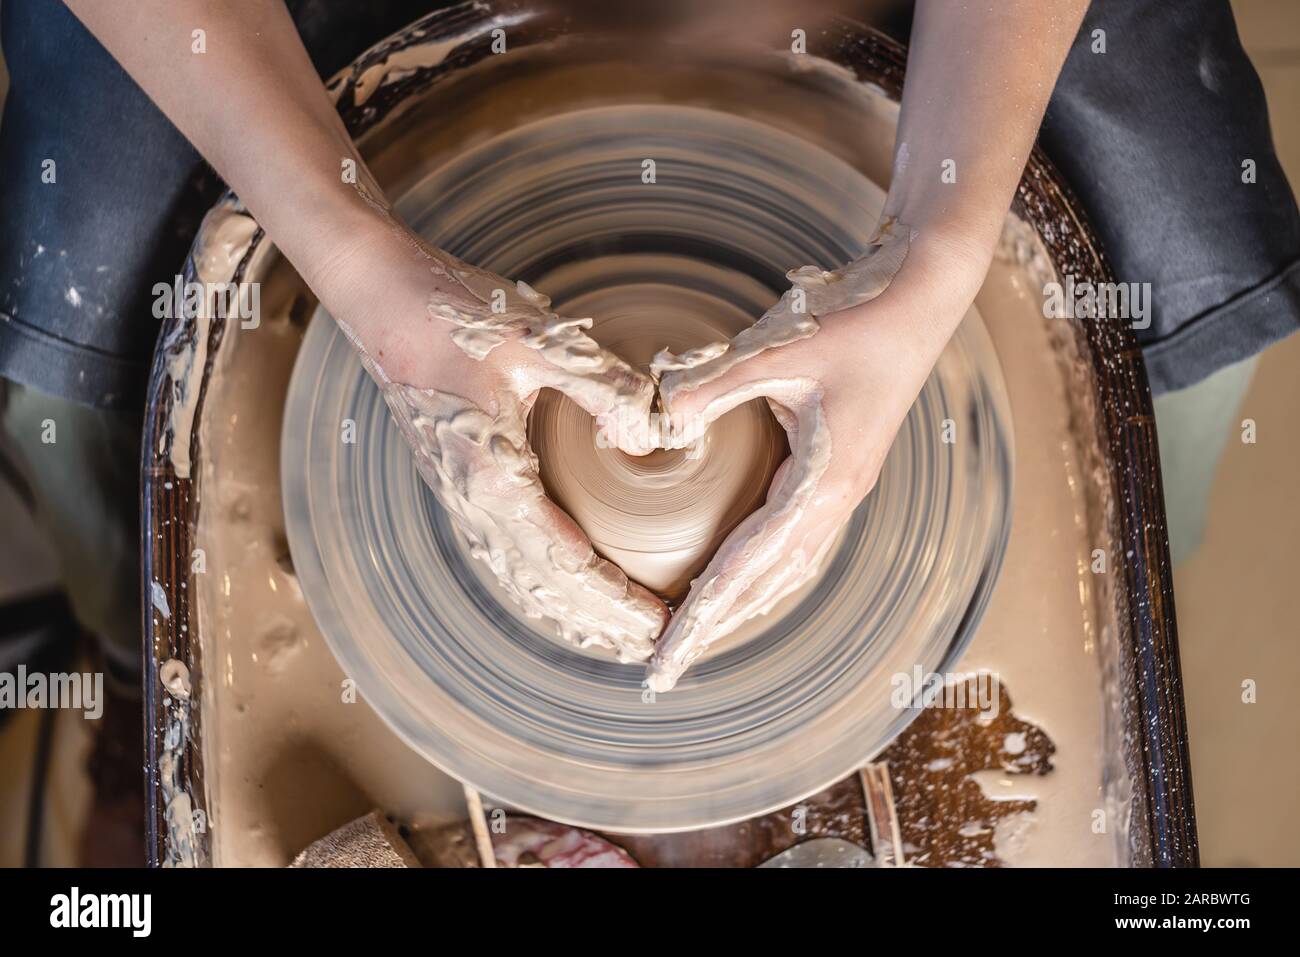 Un Potter travaille avec de l'argile sur la roue d'un Potter dans l'atelier. Les mains des femmes montrent un signe de coeur. Le concept de l'amour pour l'art poterie et la créativité. Haut Banque D'Images